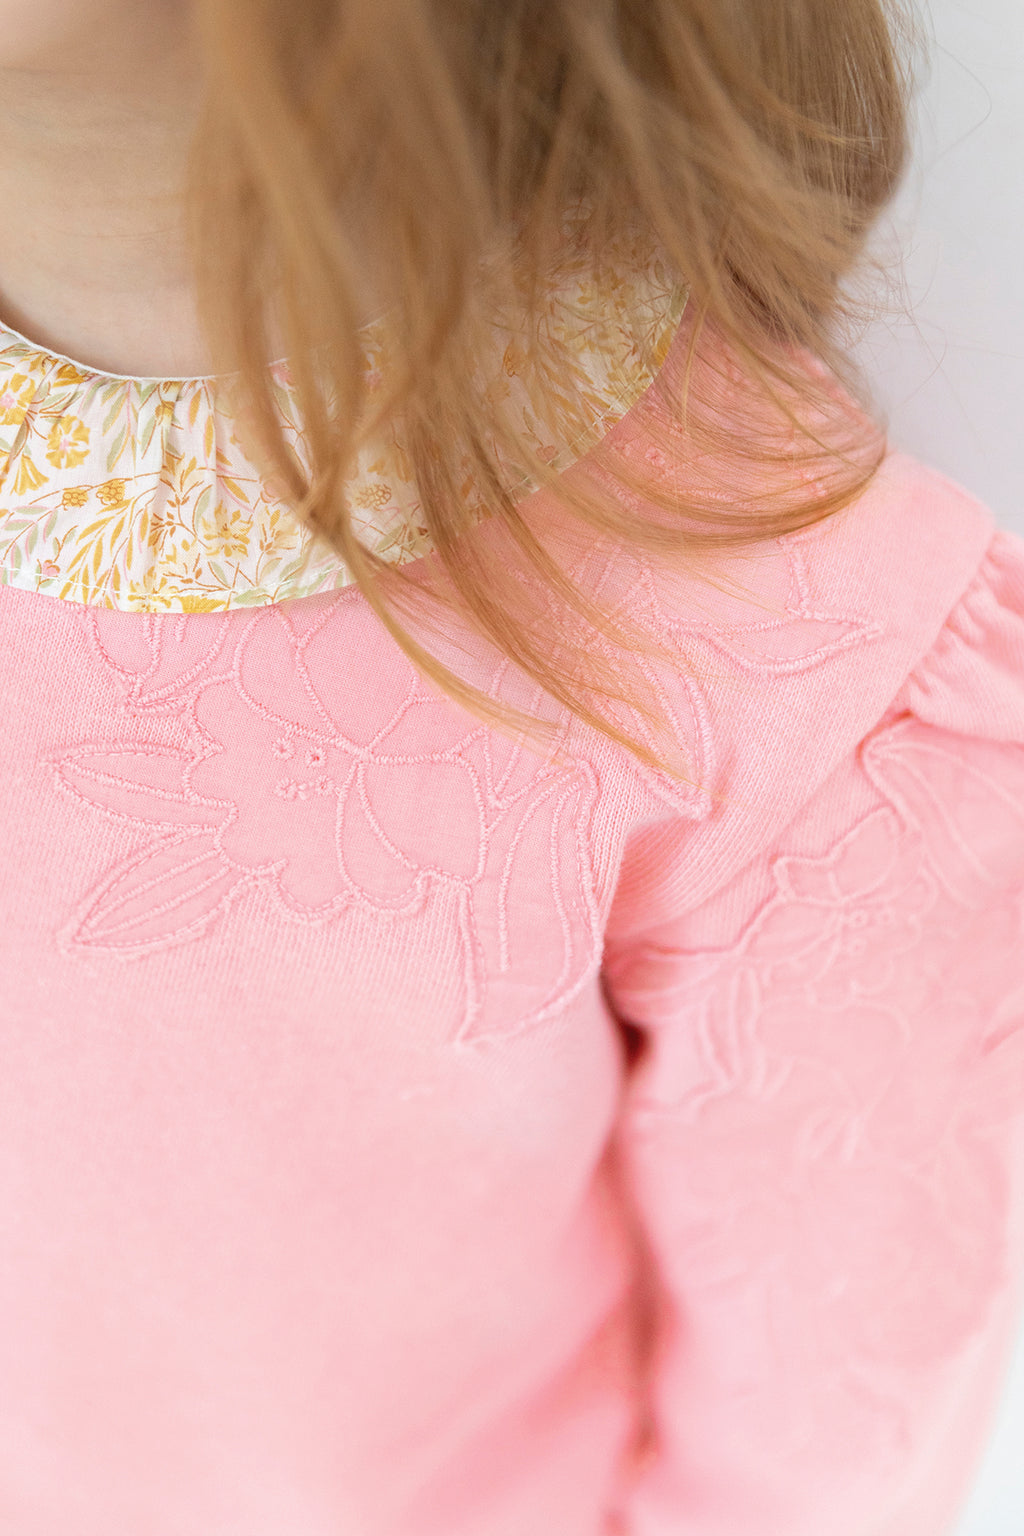 Sweatshirt - Pink embroidery